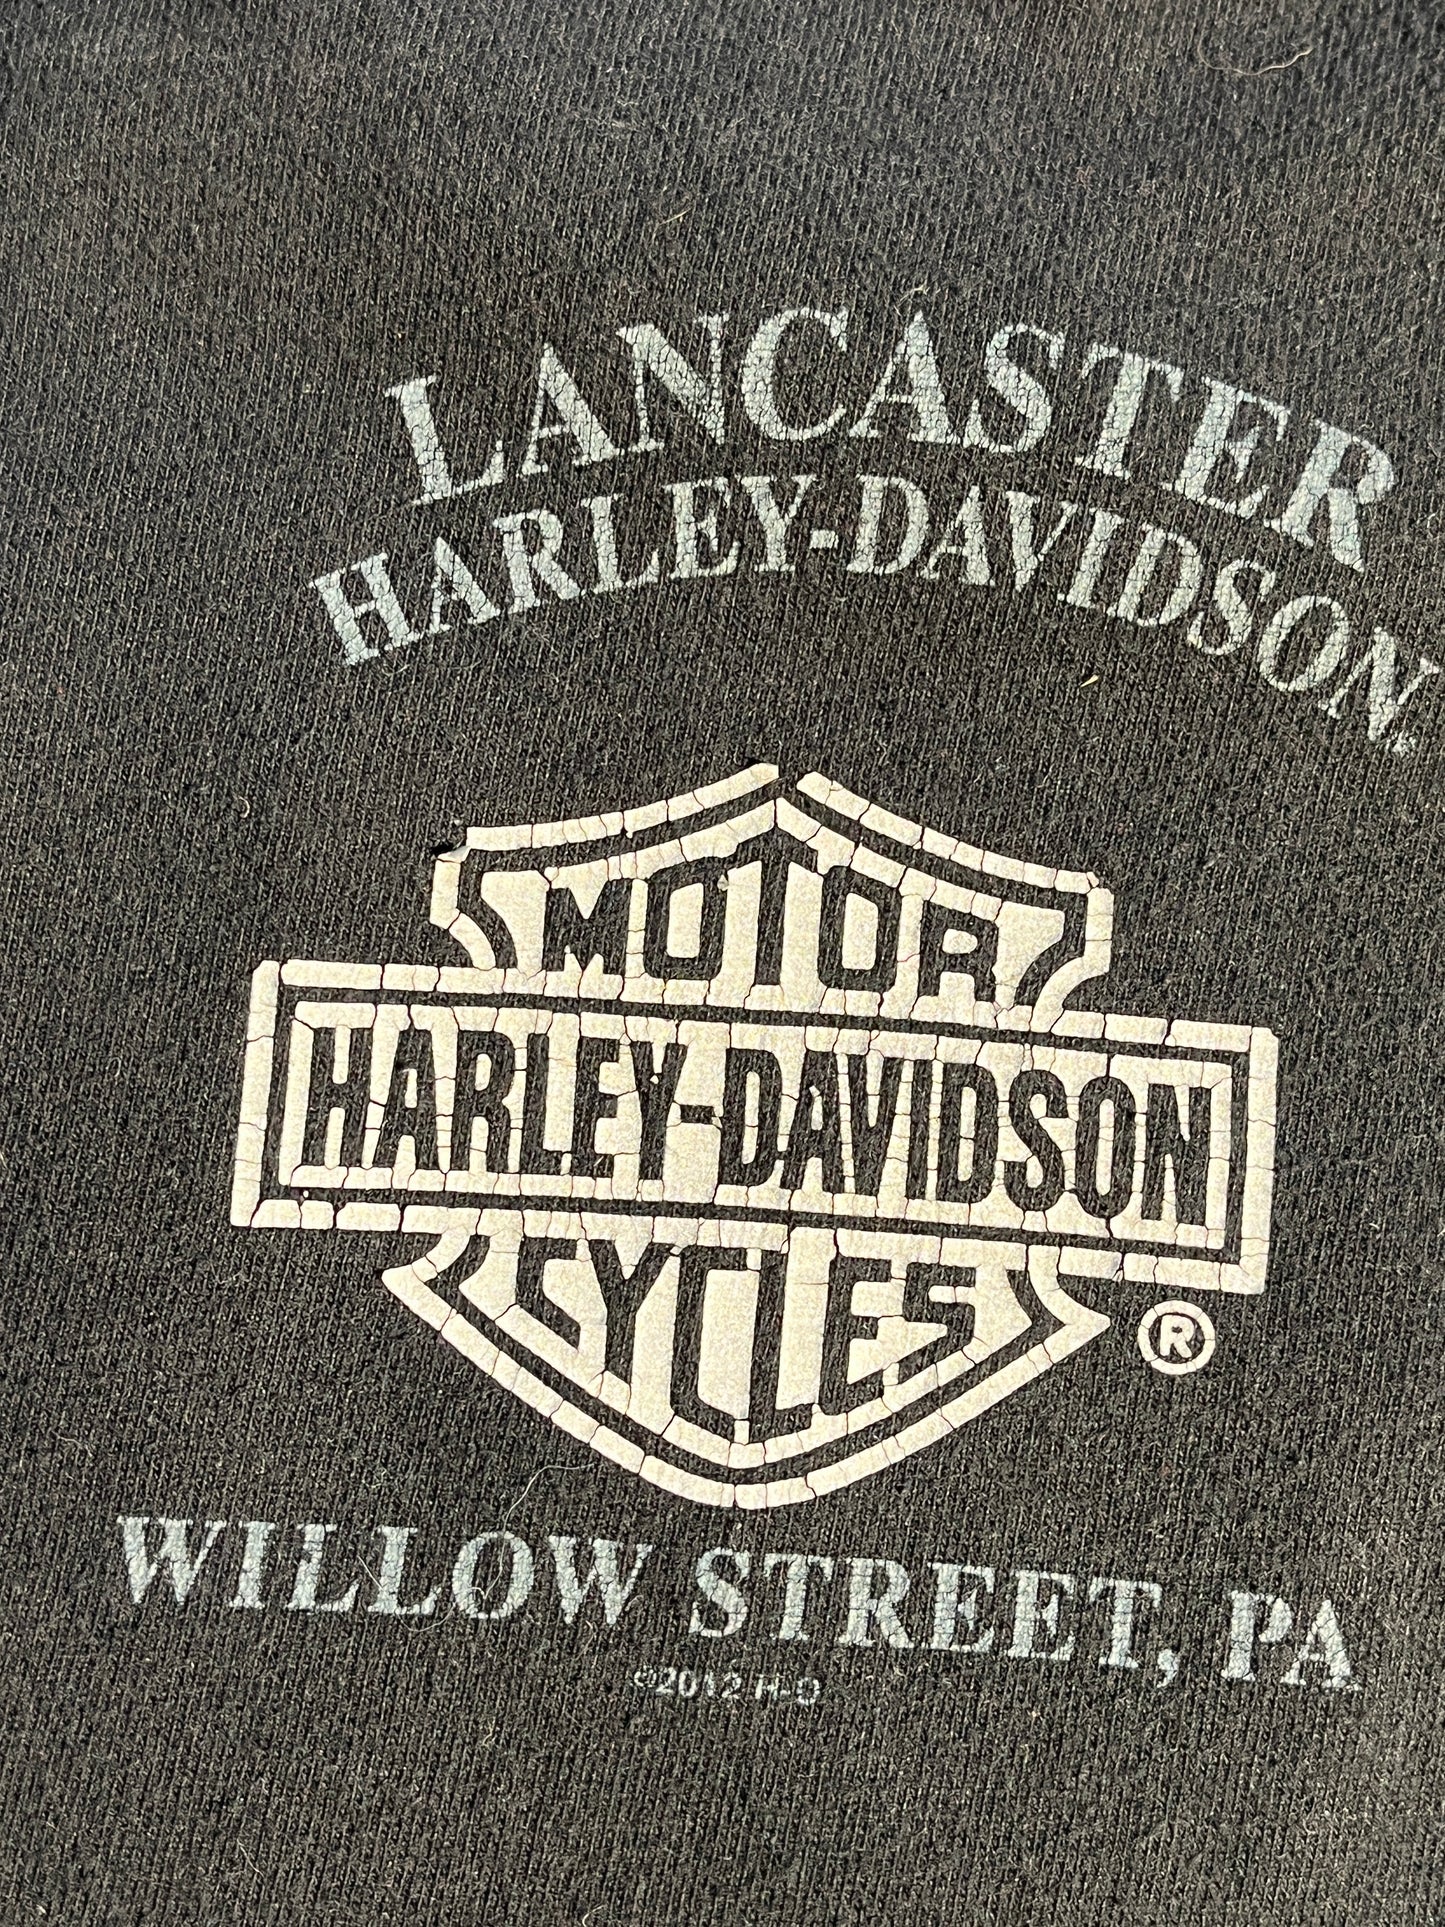 Vintage Harley Davidson T-Shirt Lancaster